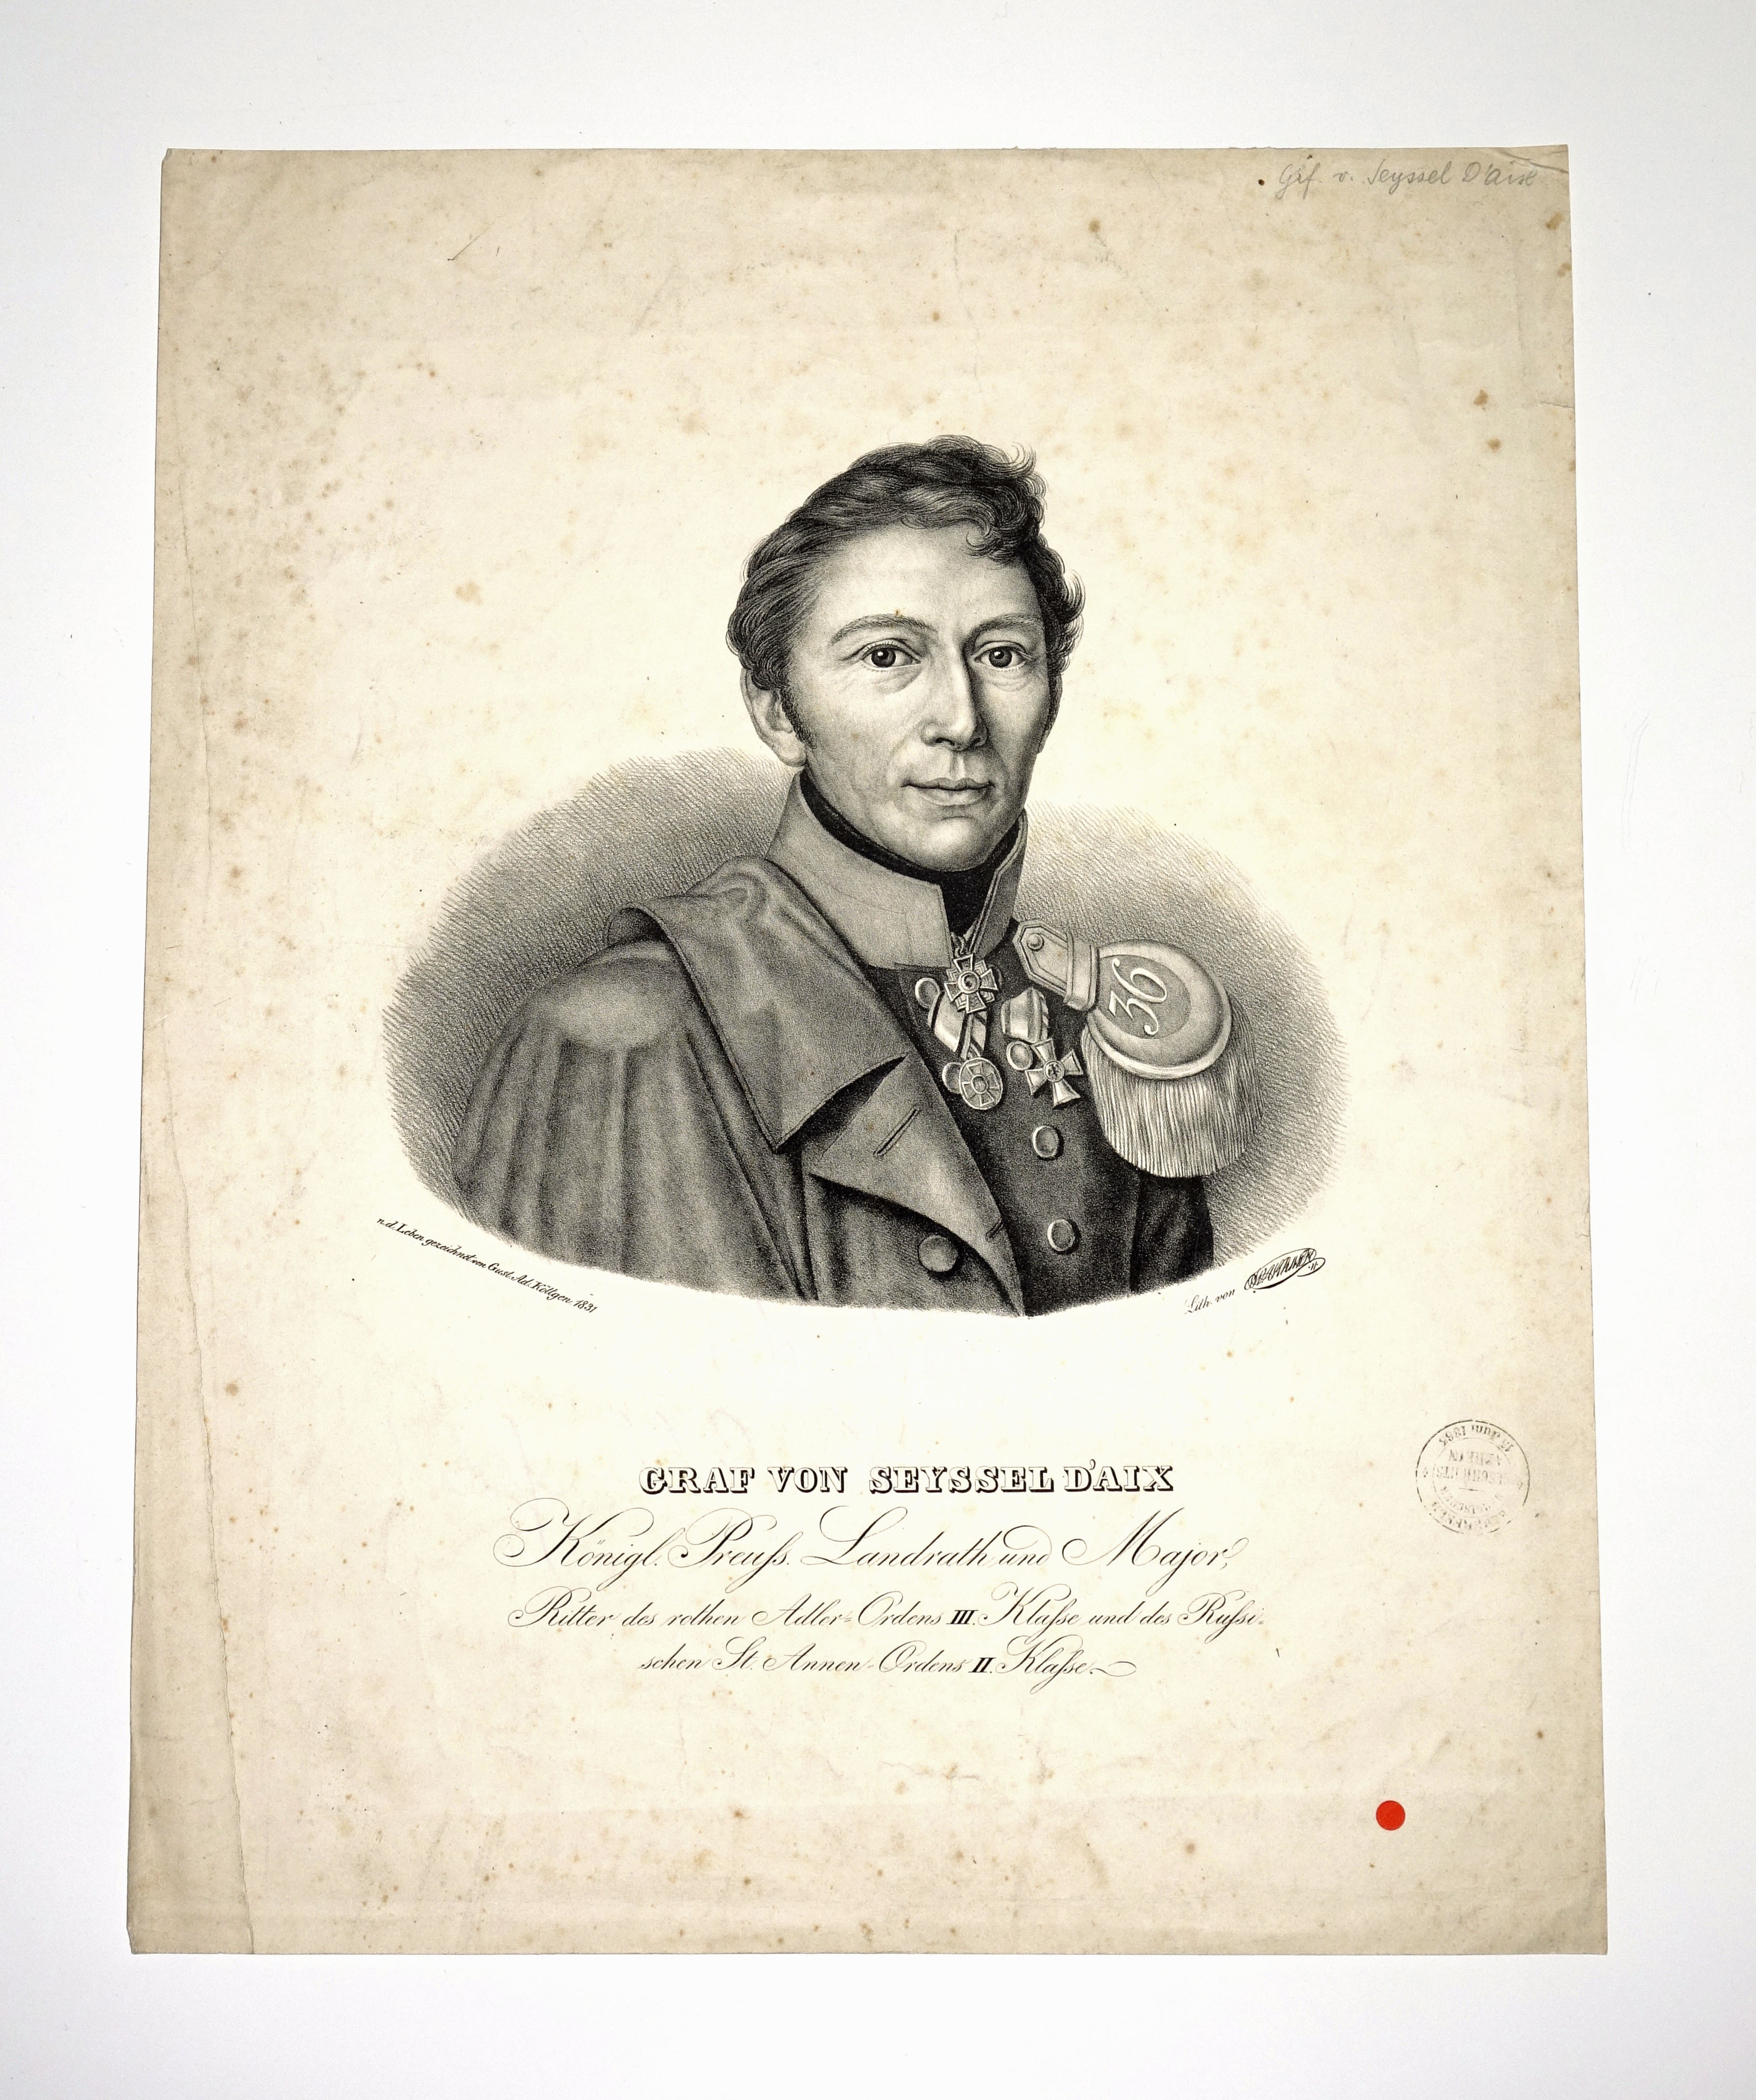 Carl Theodor Graf von Seyssel d'Aix ((C) Sammlung Bergischer Geschichtsverein e.V. CC BY-NC)